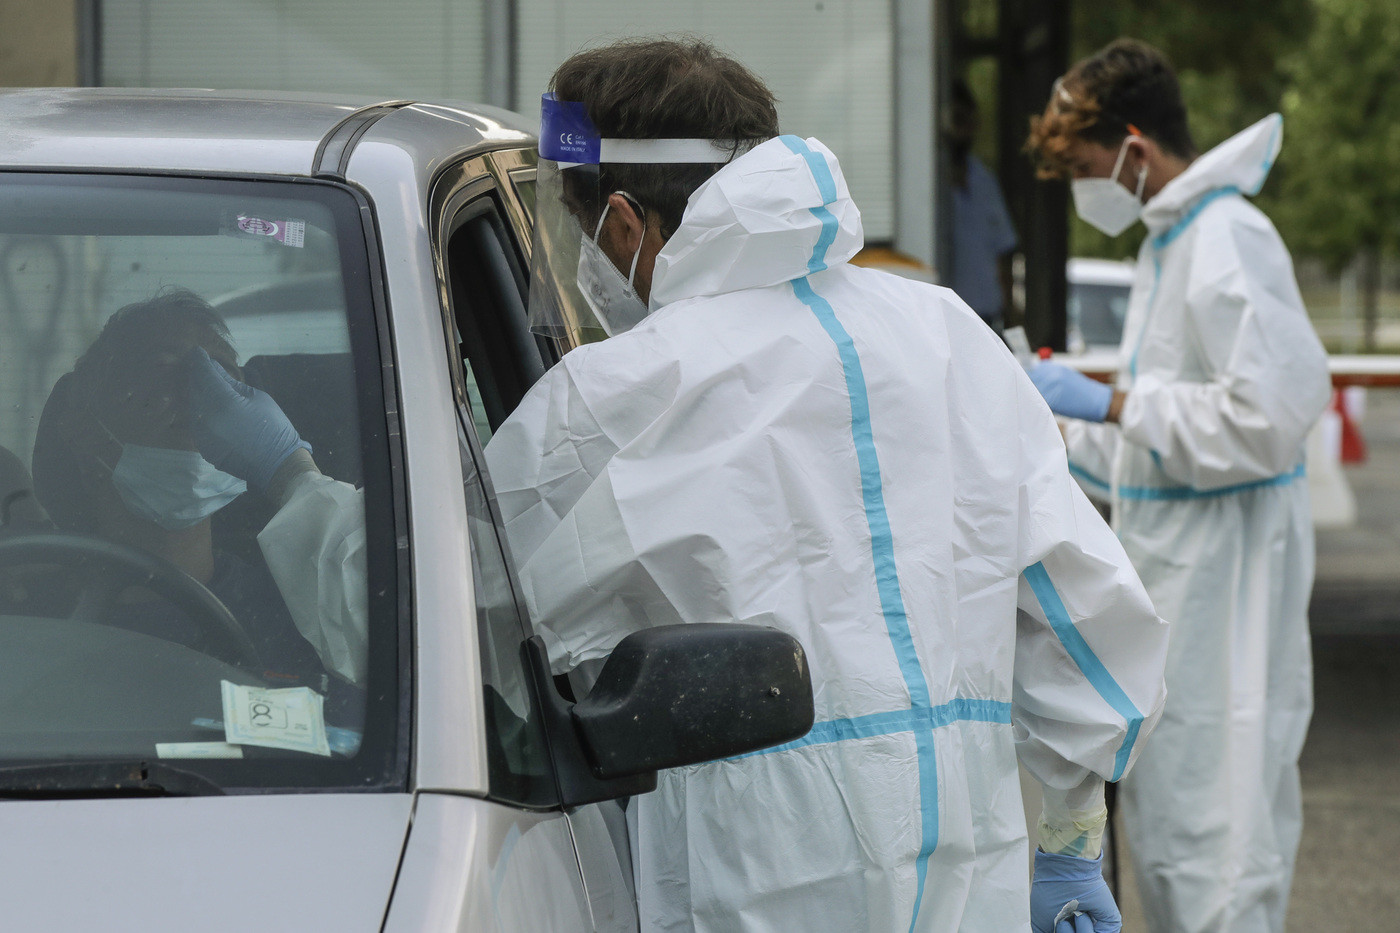 Oms: “La pandemia rallenta nel mondo”. Spagna schiera esercito